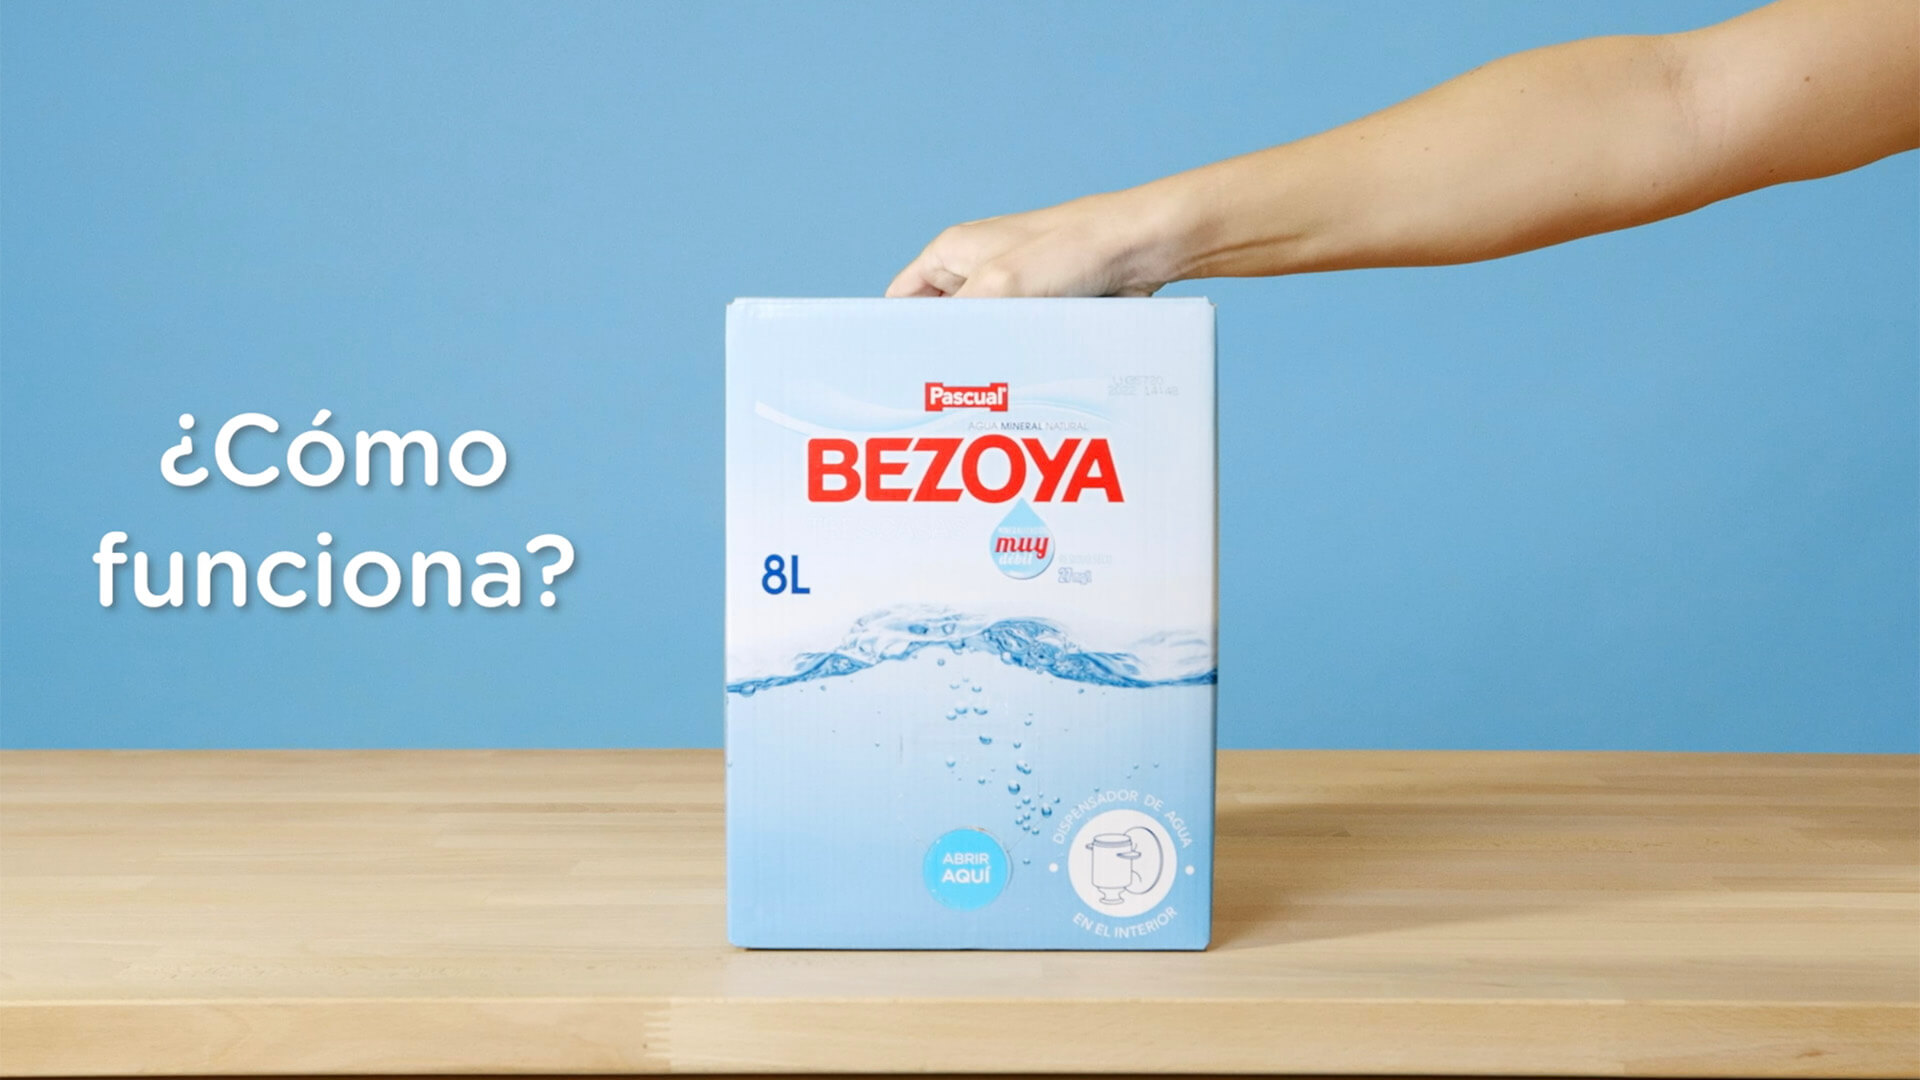 Nuevo formato de 8 litros, La comodidad. La reducción de plástico. Tú  eliges el motivo, nosotros lo hacemos posible: Nuevo formato de 8 litros # Bezoya.  By Bezoya